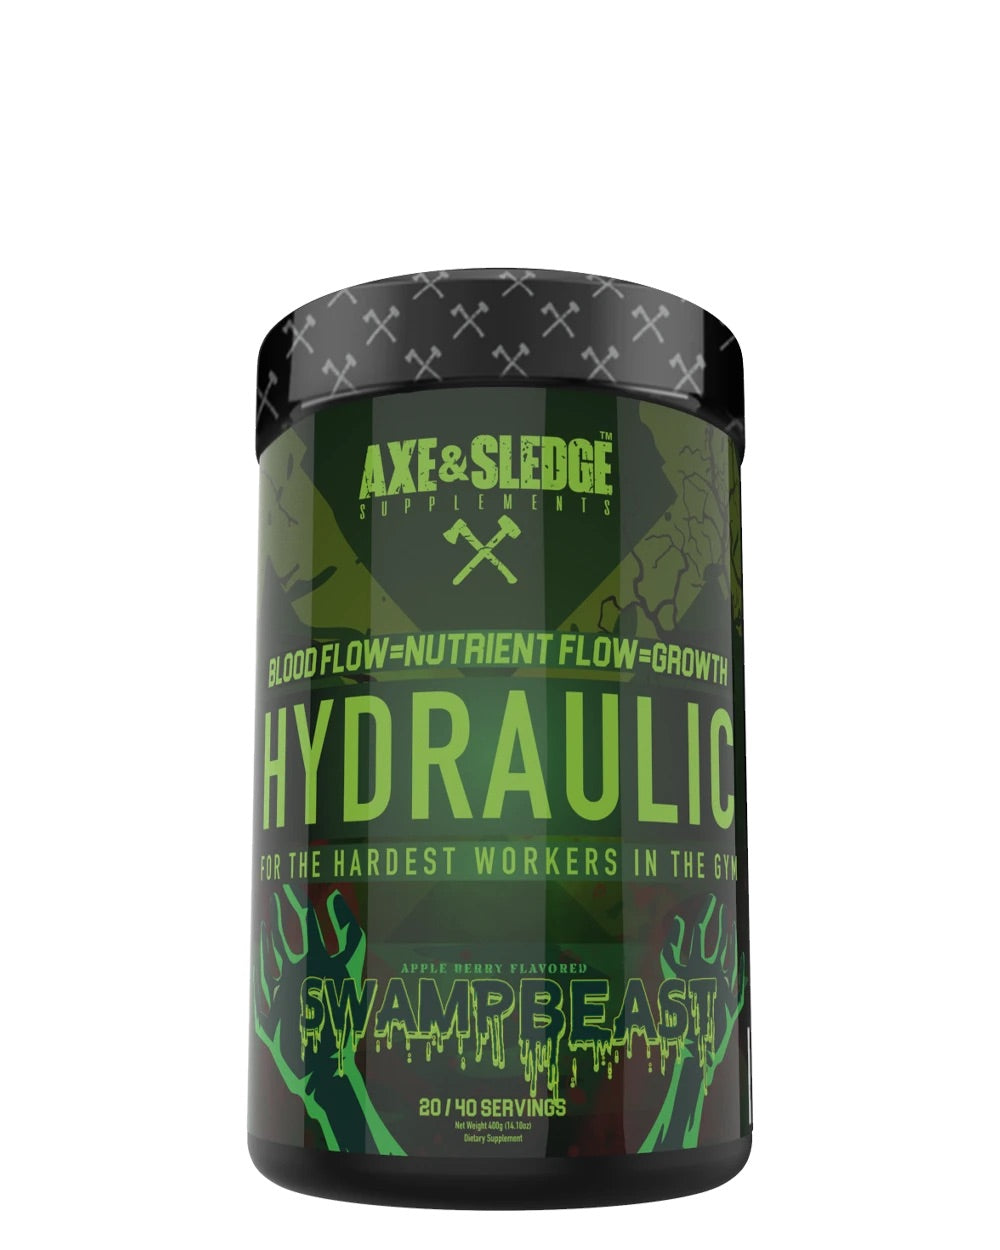 Hydraulic - Non-Stim Pre-Pump - Axe and Sledge - Prime Sports Nutrition